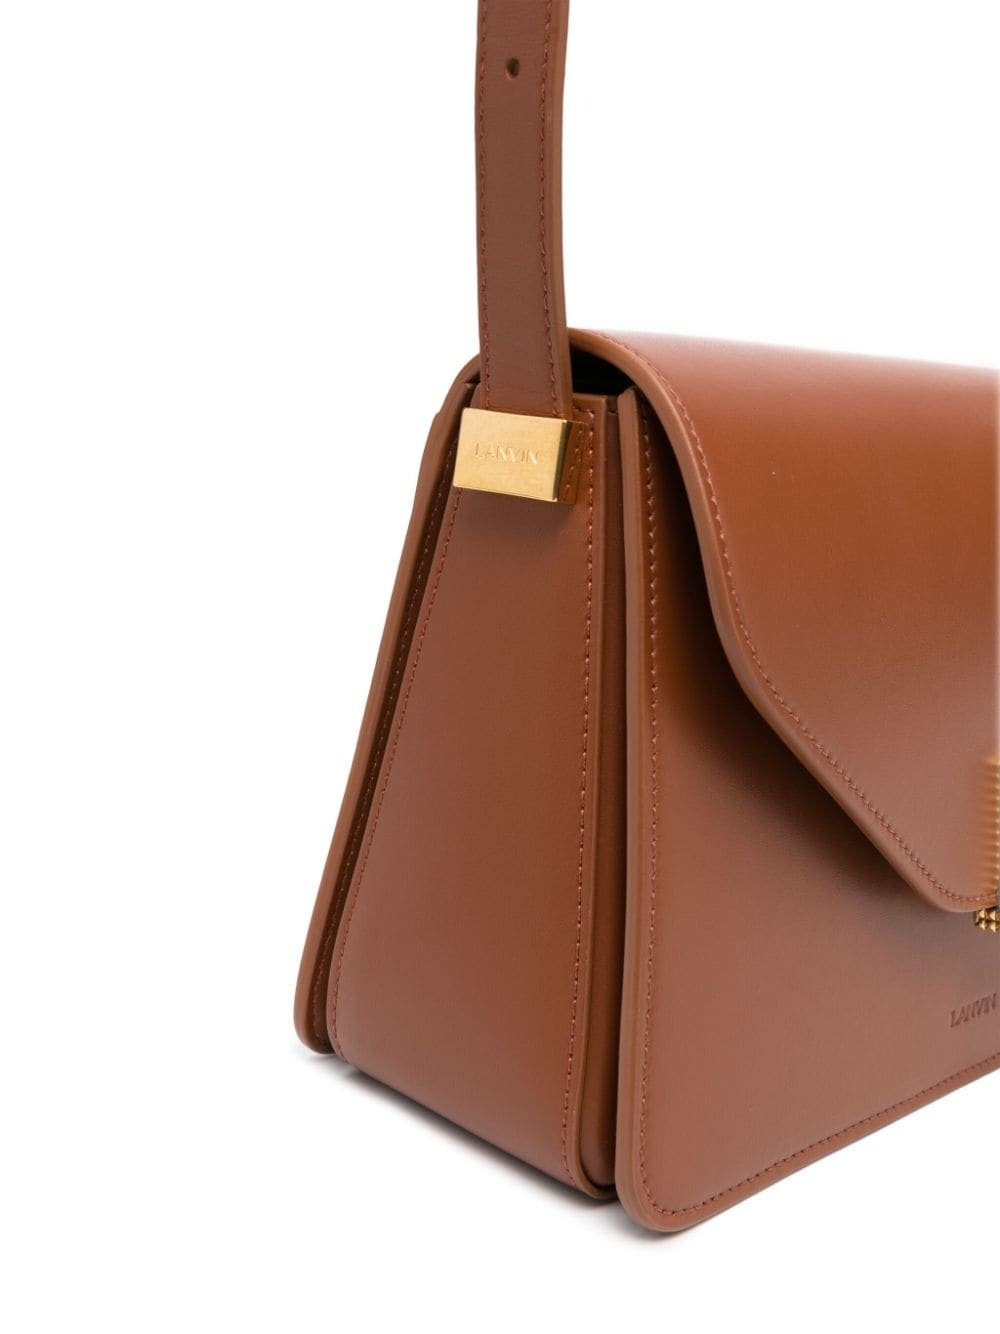 Lanvin Concerto Leather Shoulder Bag